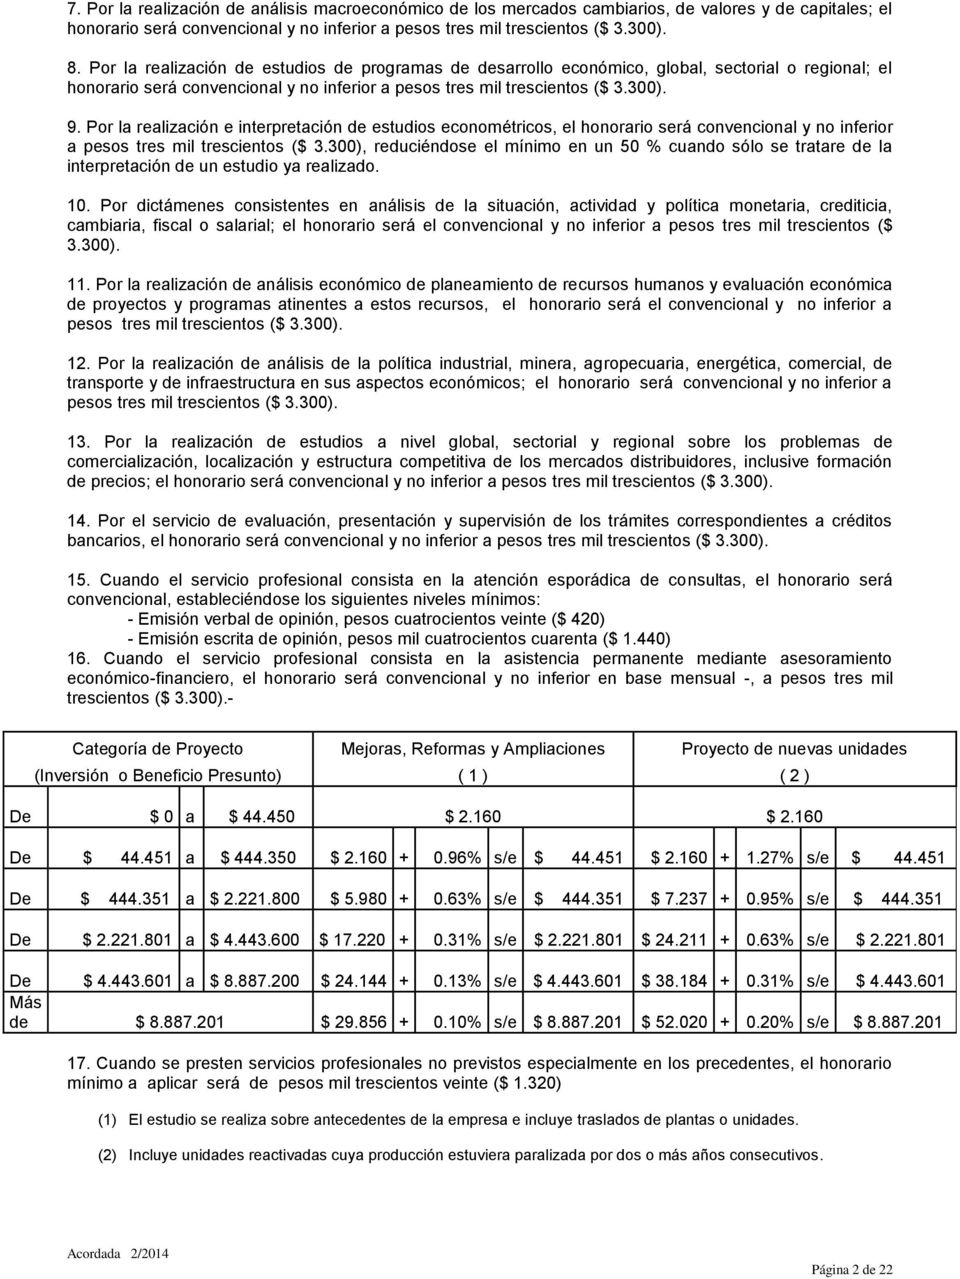 Por la realización e interpretación de estudios econométricos, el honorario será convencional y no inferior a pesos tres mil trescientos ($ 3.